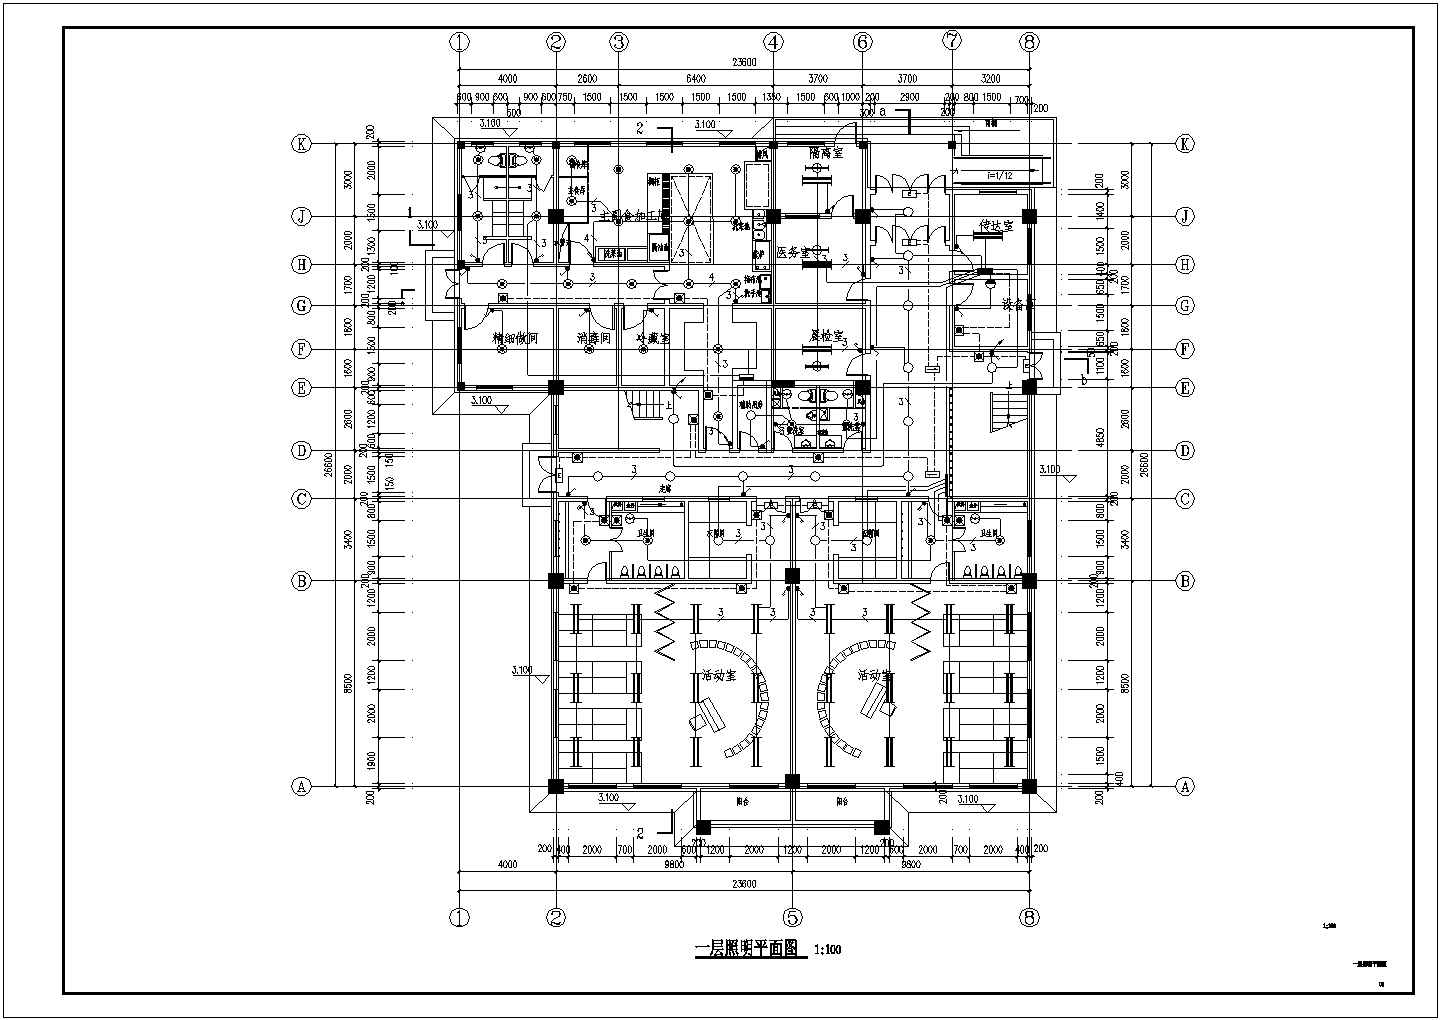 【廊坊】某小区2层幼儿园电气设计施工图纸